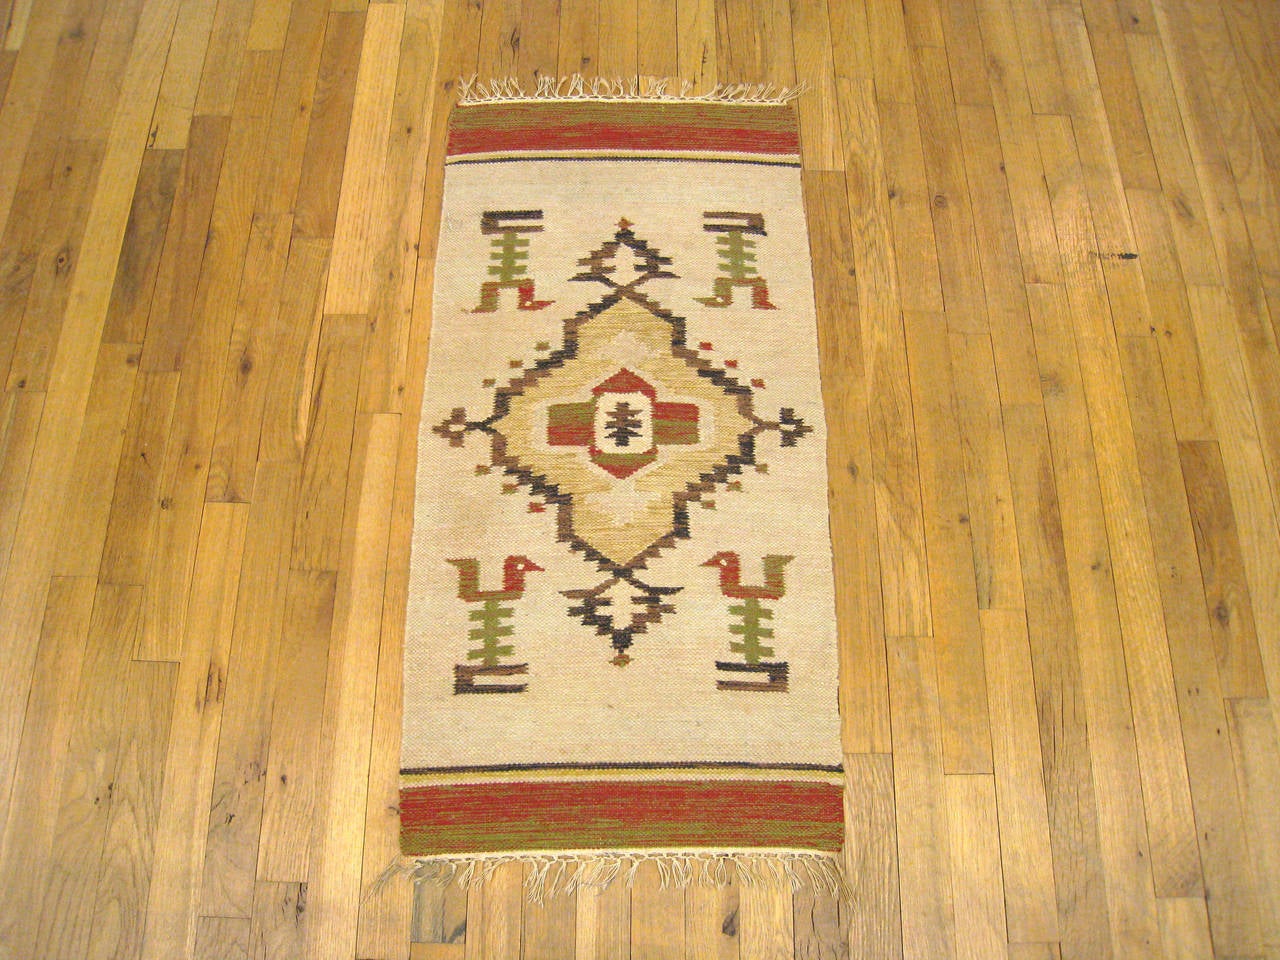 Ein dekorativer Vintage-Teppich vom Stamm der Zapotec-Indianer in Oaxaca, Mexiko, Größe 3'3 x 1'8, mit einem zentralen Medaillon auf einem schlichten beigen Feld, mit vier stilisierten Vogelmotiven, die an jeder der vier Ecken stehen. Das Hauptfeld